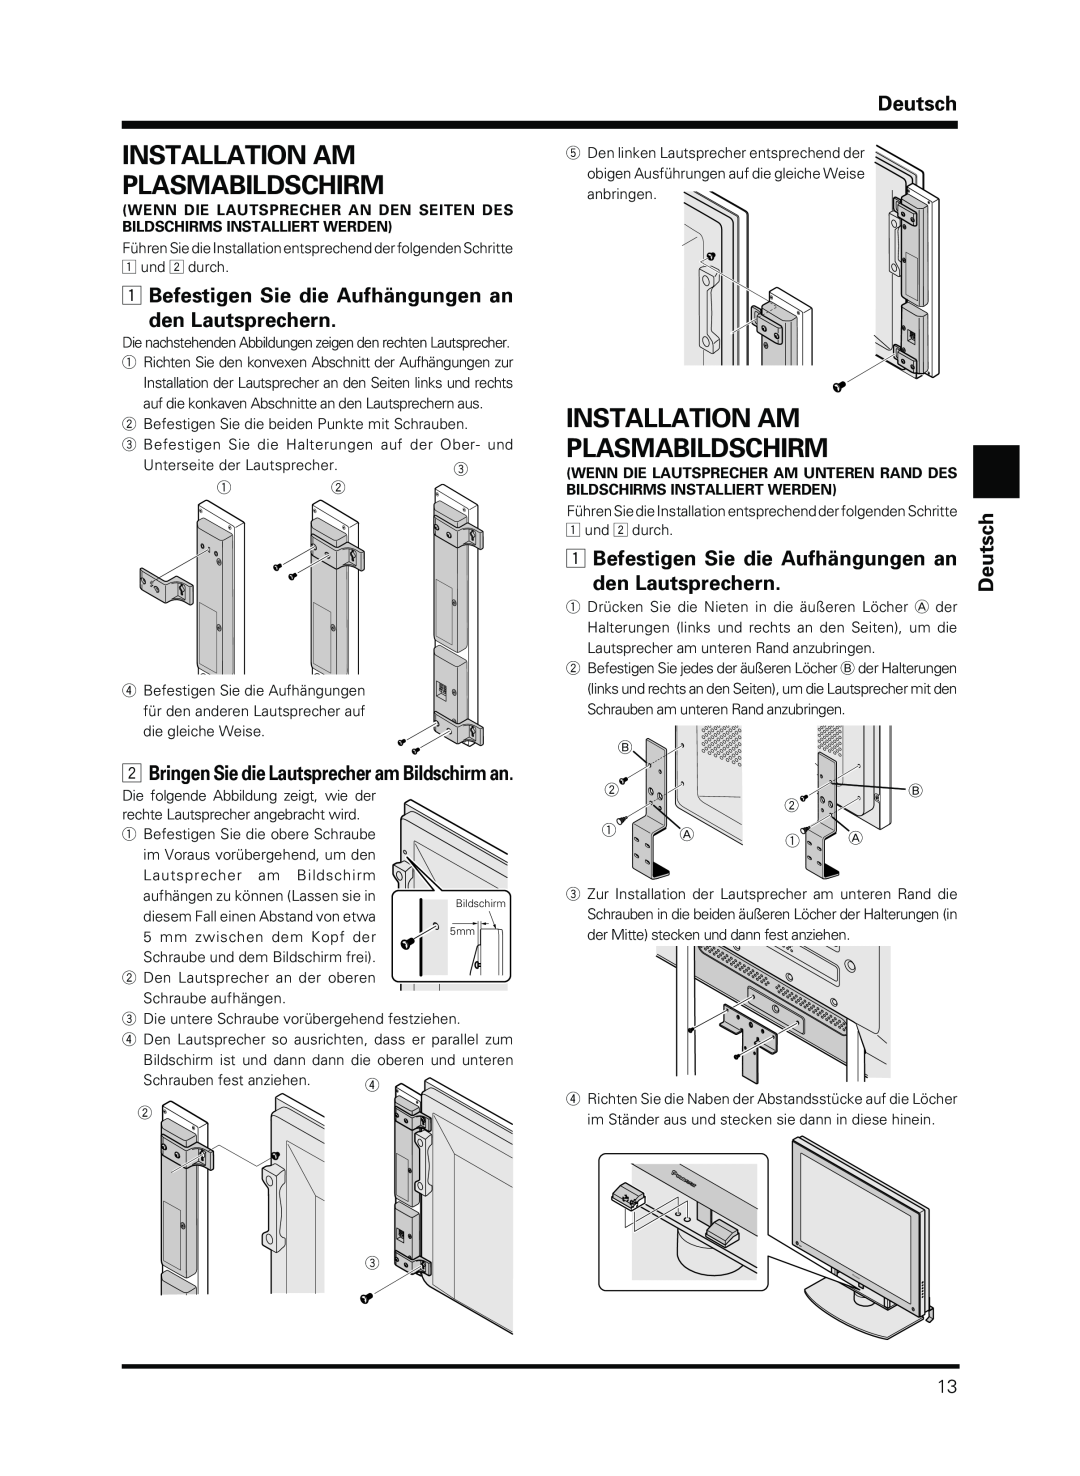 Pioneer PDP-S13-LR manual Installation Am Plasmabildschirm, Befestigen Sie die Aufhängungen an den Lautsprechern, Deutsch 